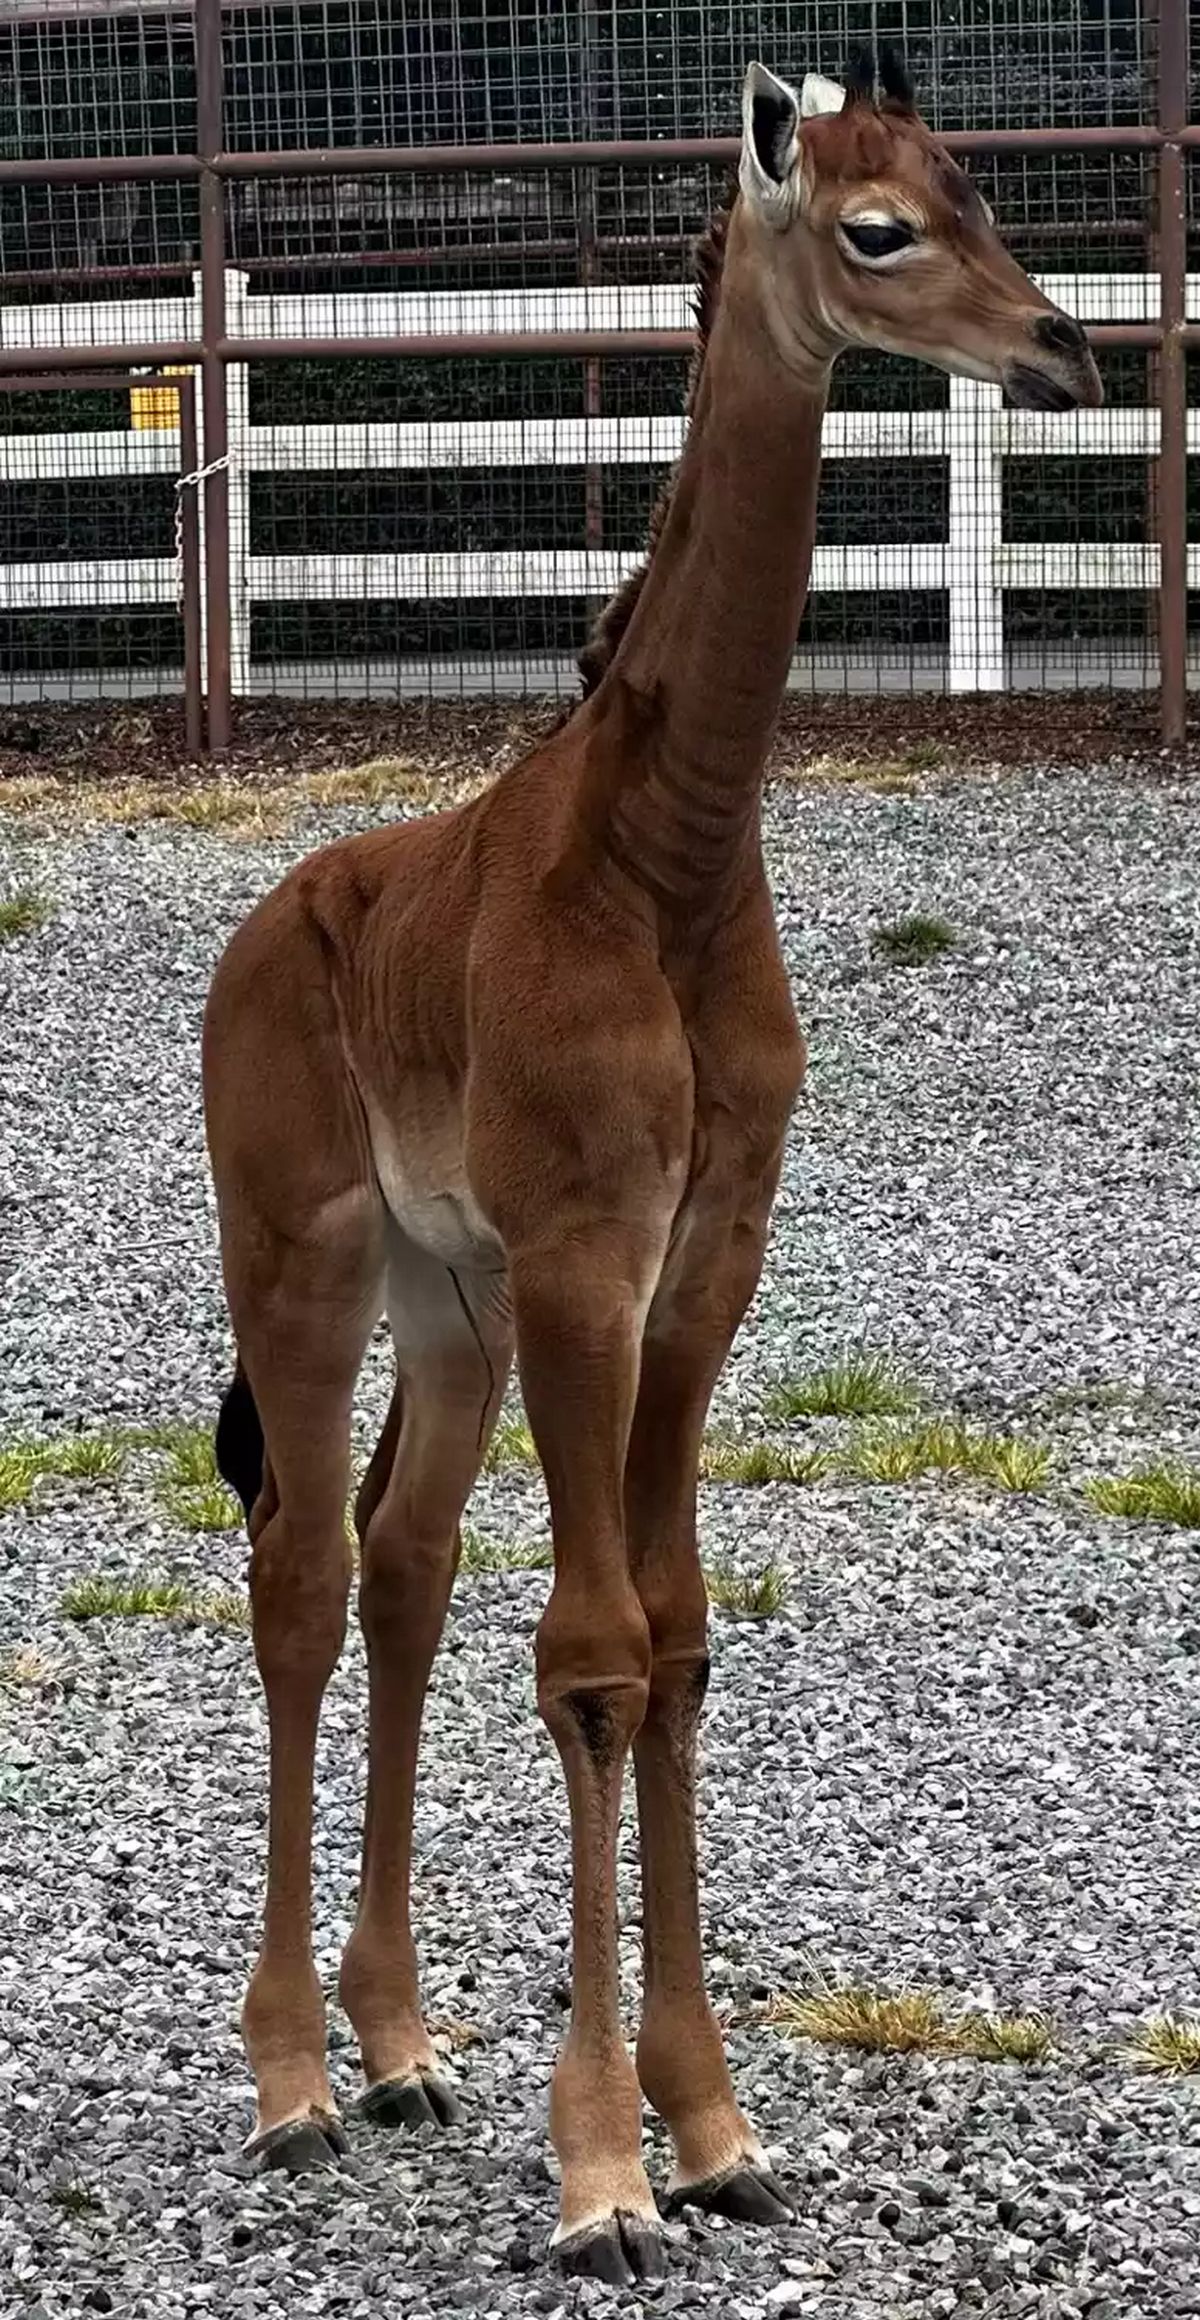 Une rarissime girafe sans tache a été baptisée au Brights Zoo. On pense qu'elle est la seule girafe de cette couleur sur Terre.